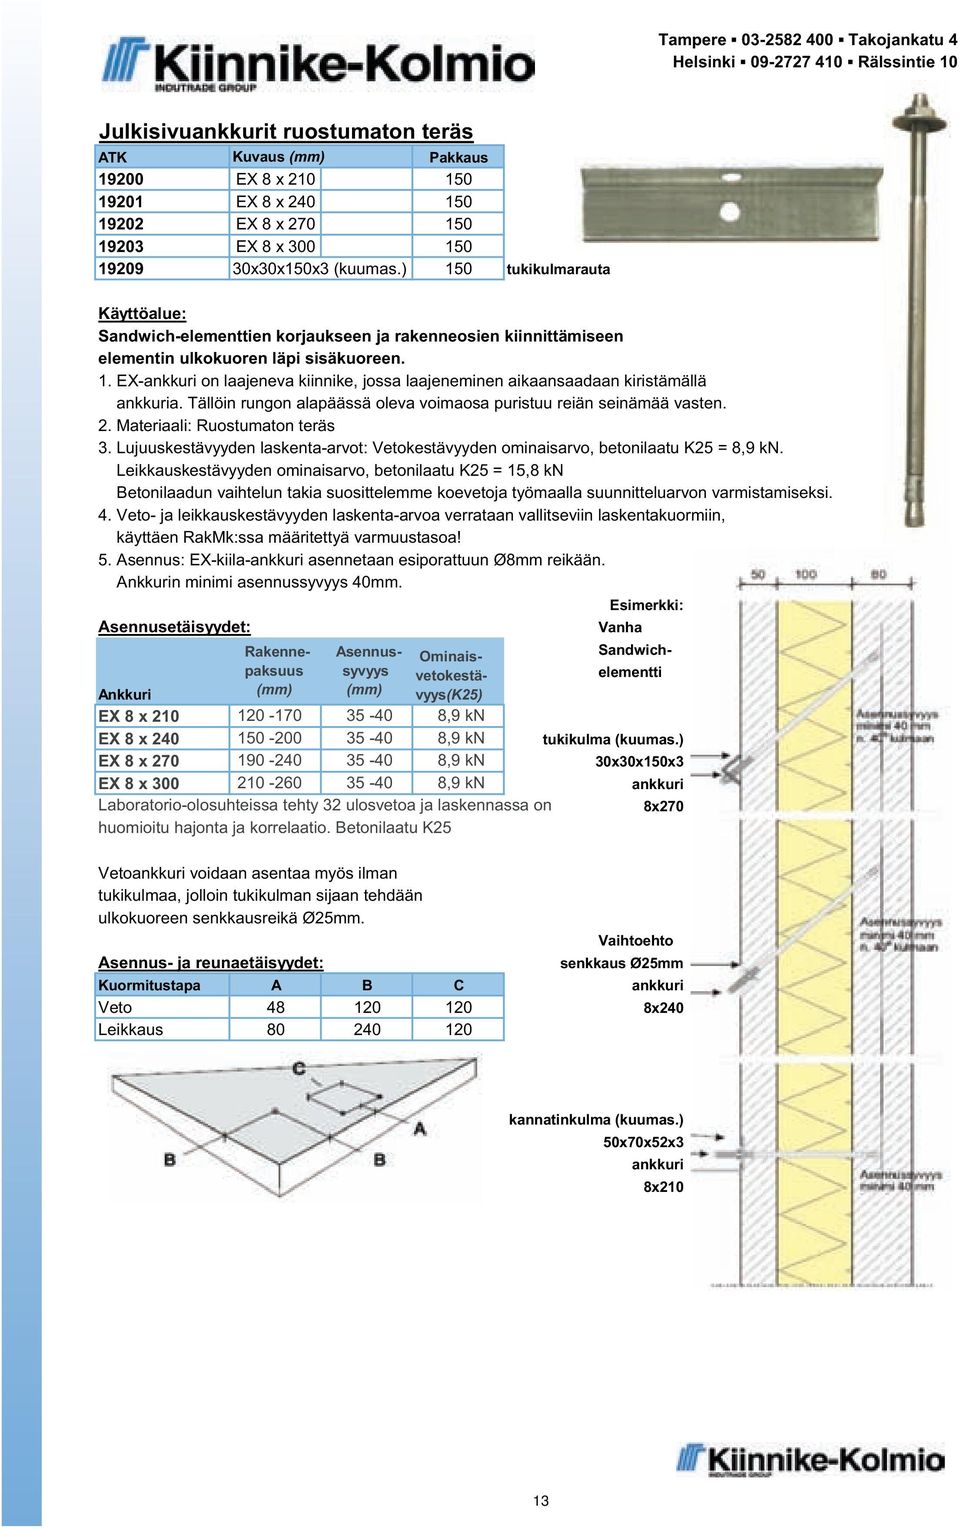 Leikkauskestävyyden ominaisarvo, betonilaatu K25 = 15,8 kn Betonilaadun vaihtelun takia suosittelemme koevetoja työmaalla suunnitteluarvon varmistamiseksi. 4.